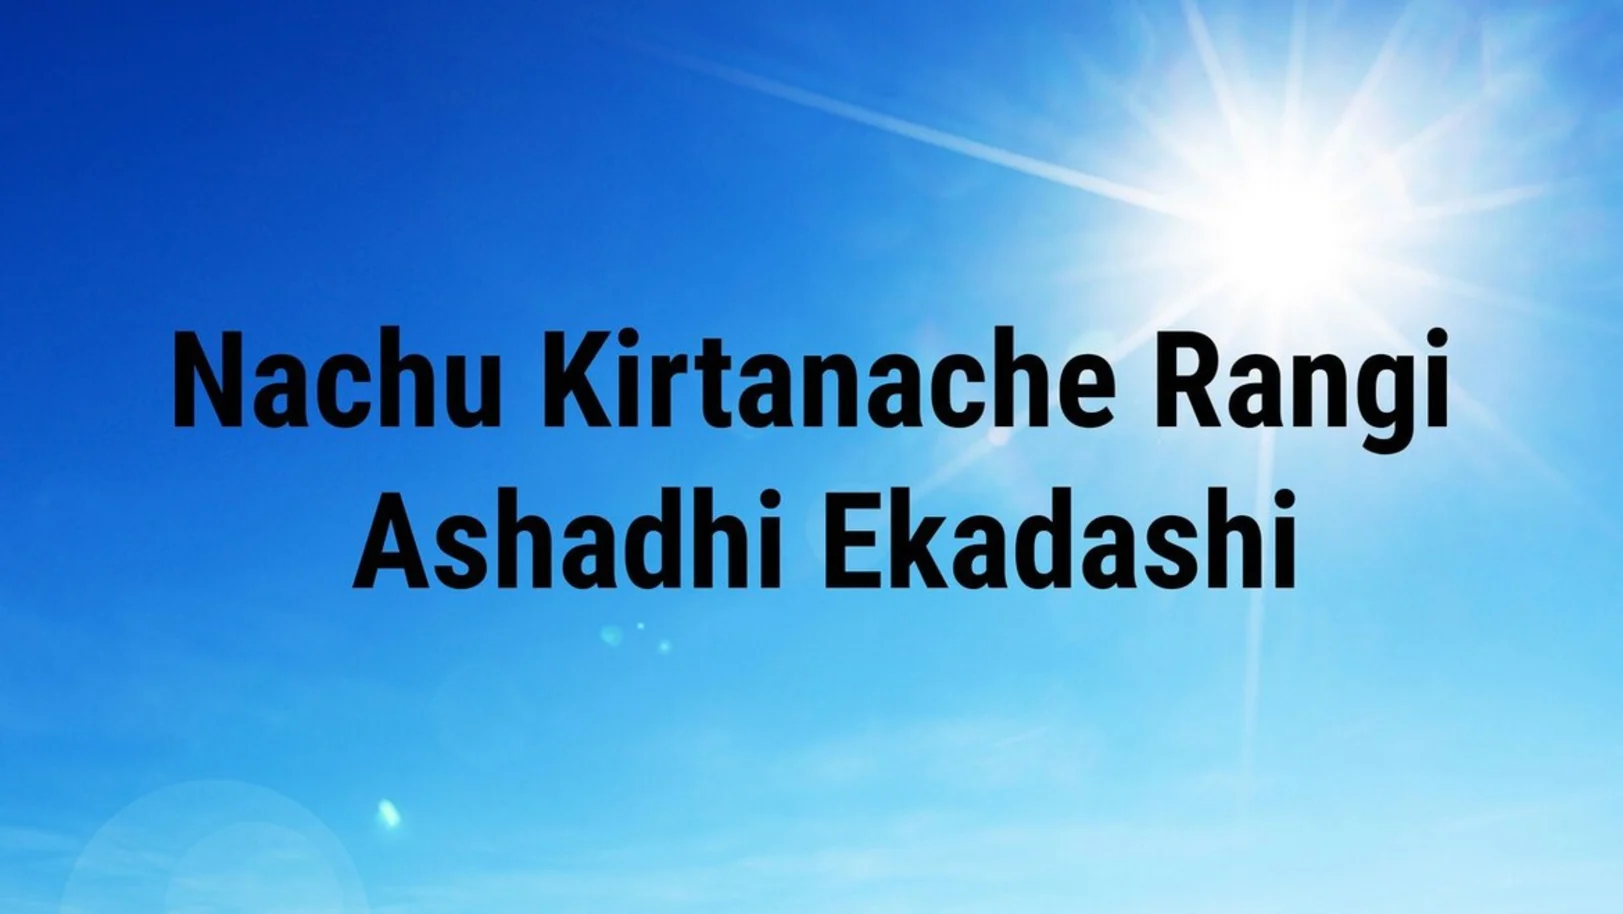 Nachu Kirtanache Rangi Ashadhi Ekadashi Streaming Now On Zee Talkies